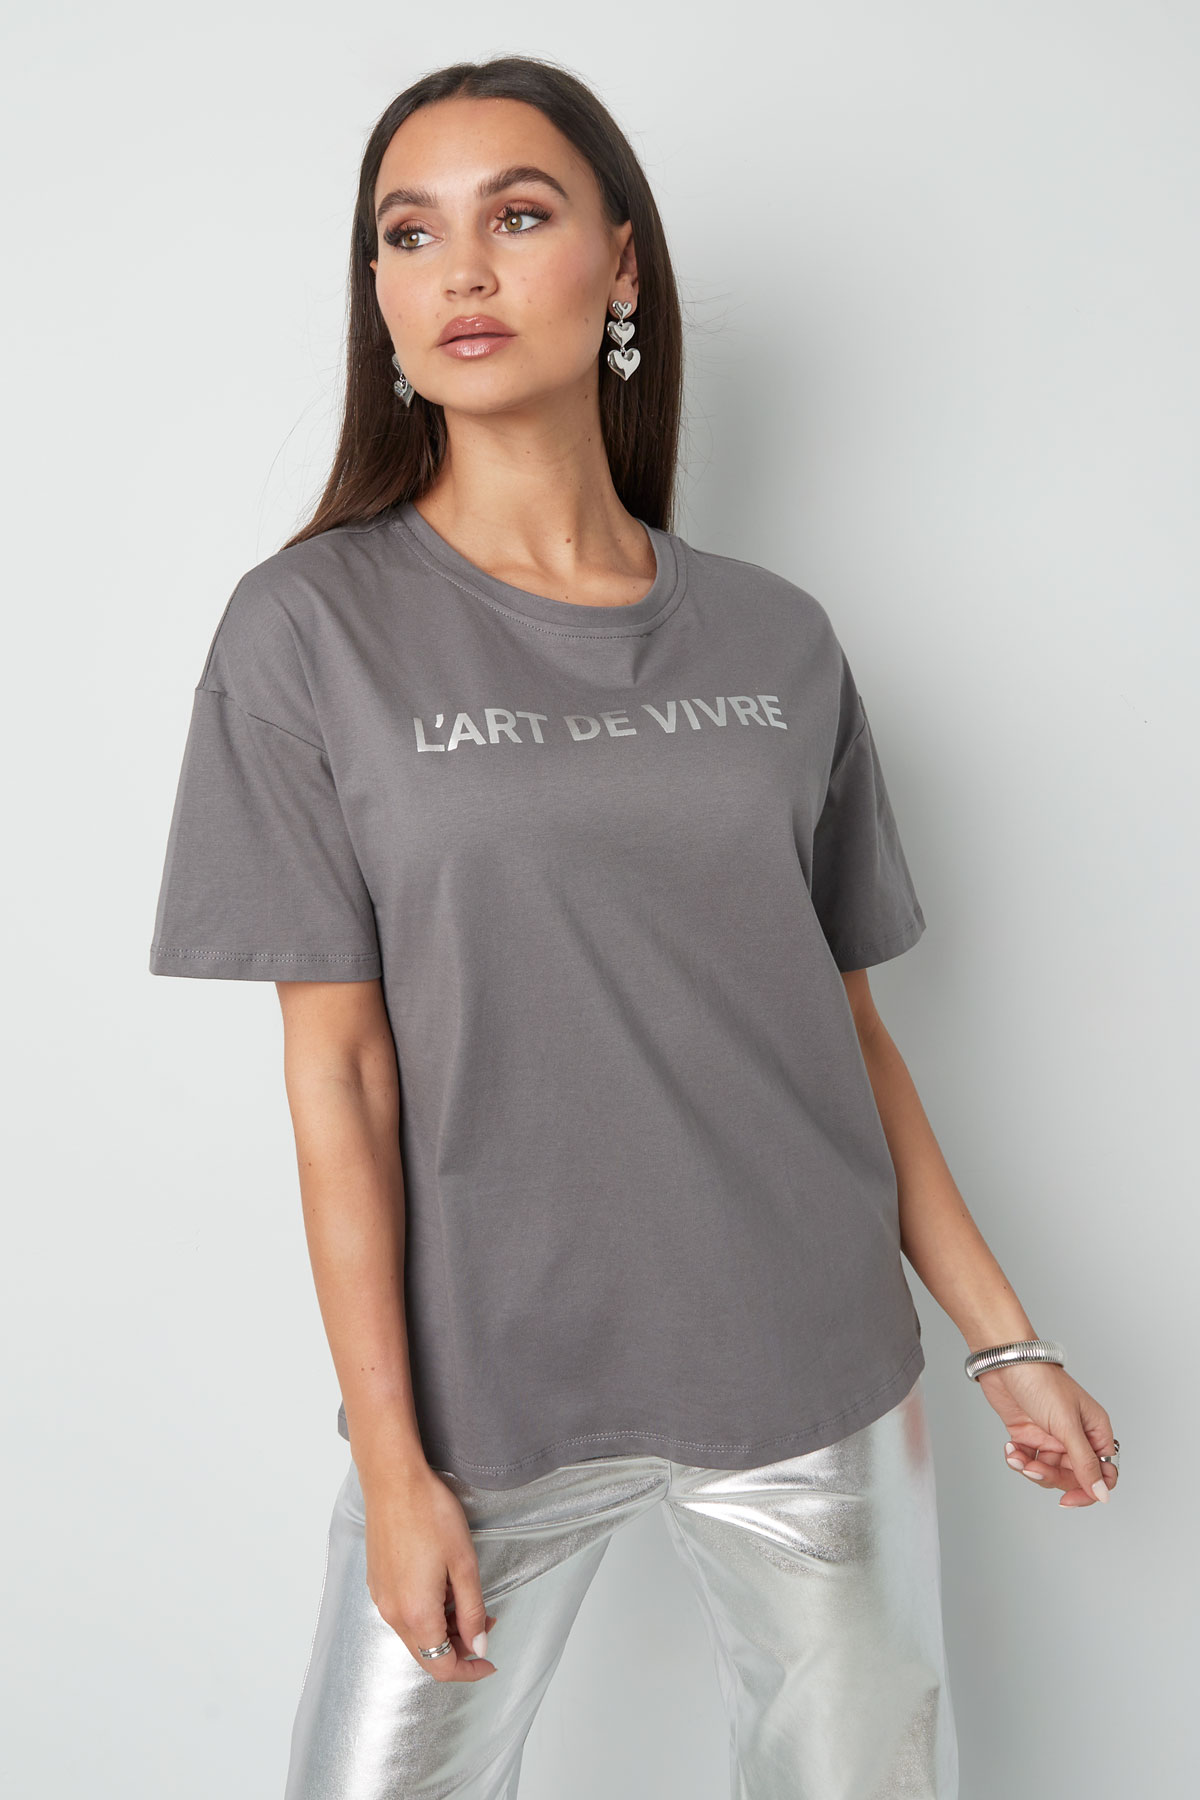 T-shirt l'art de vivre - gris argent h5 Image2